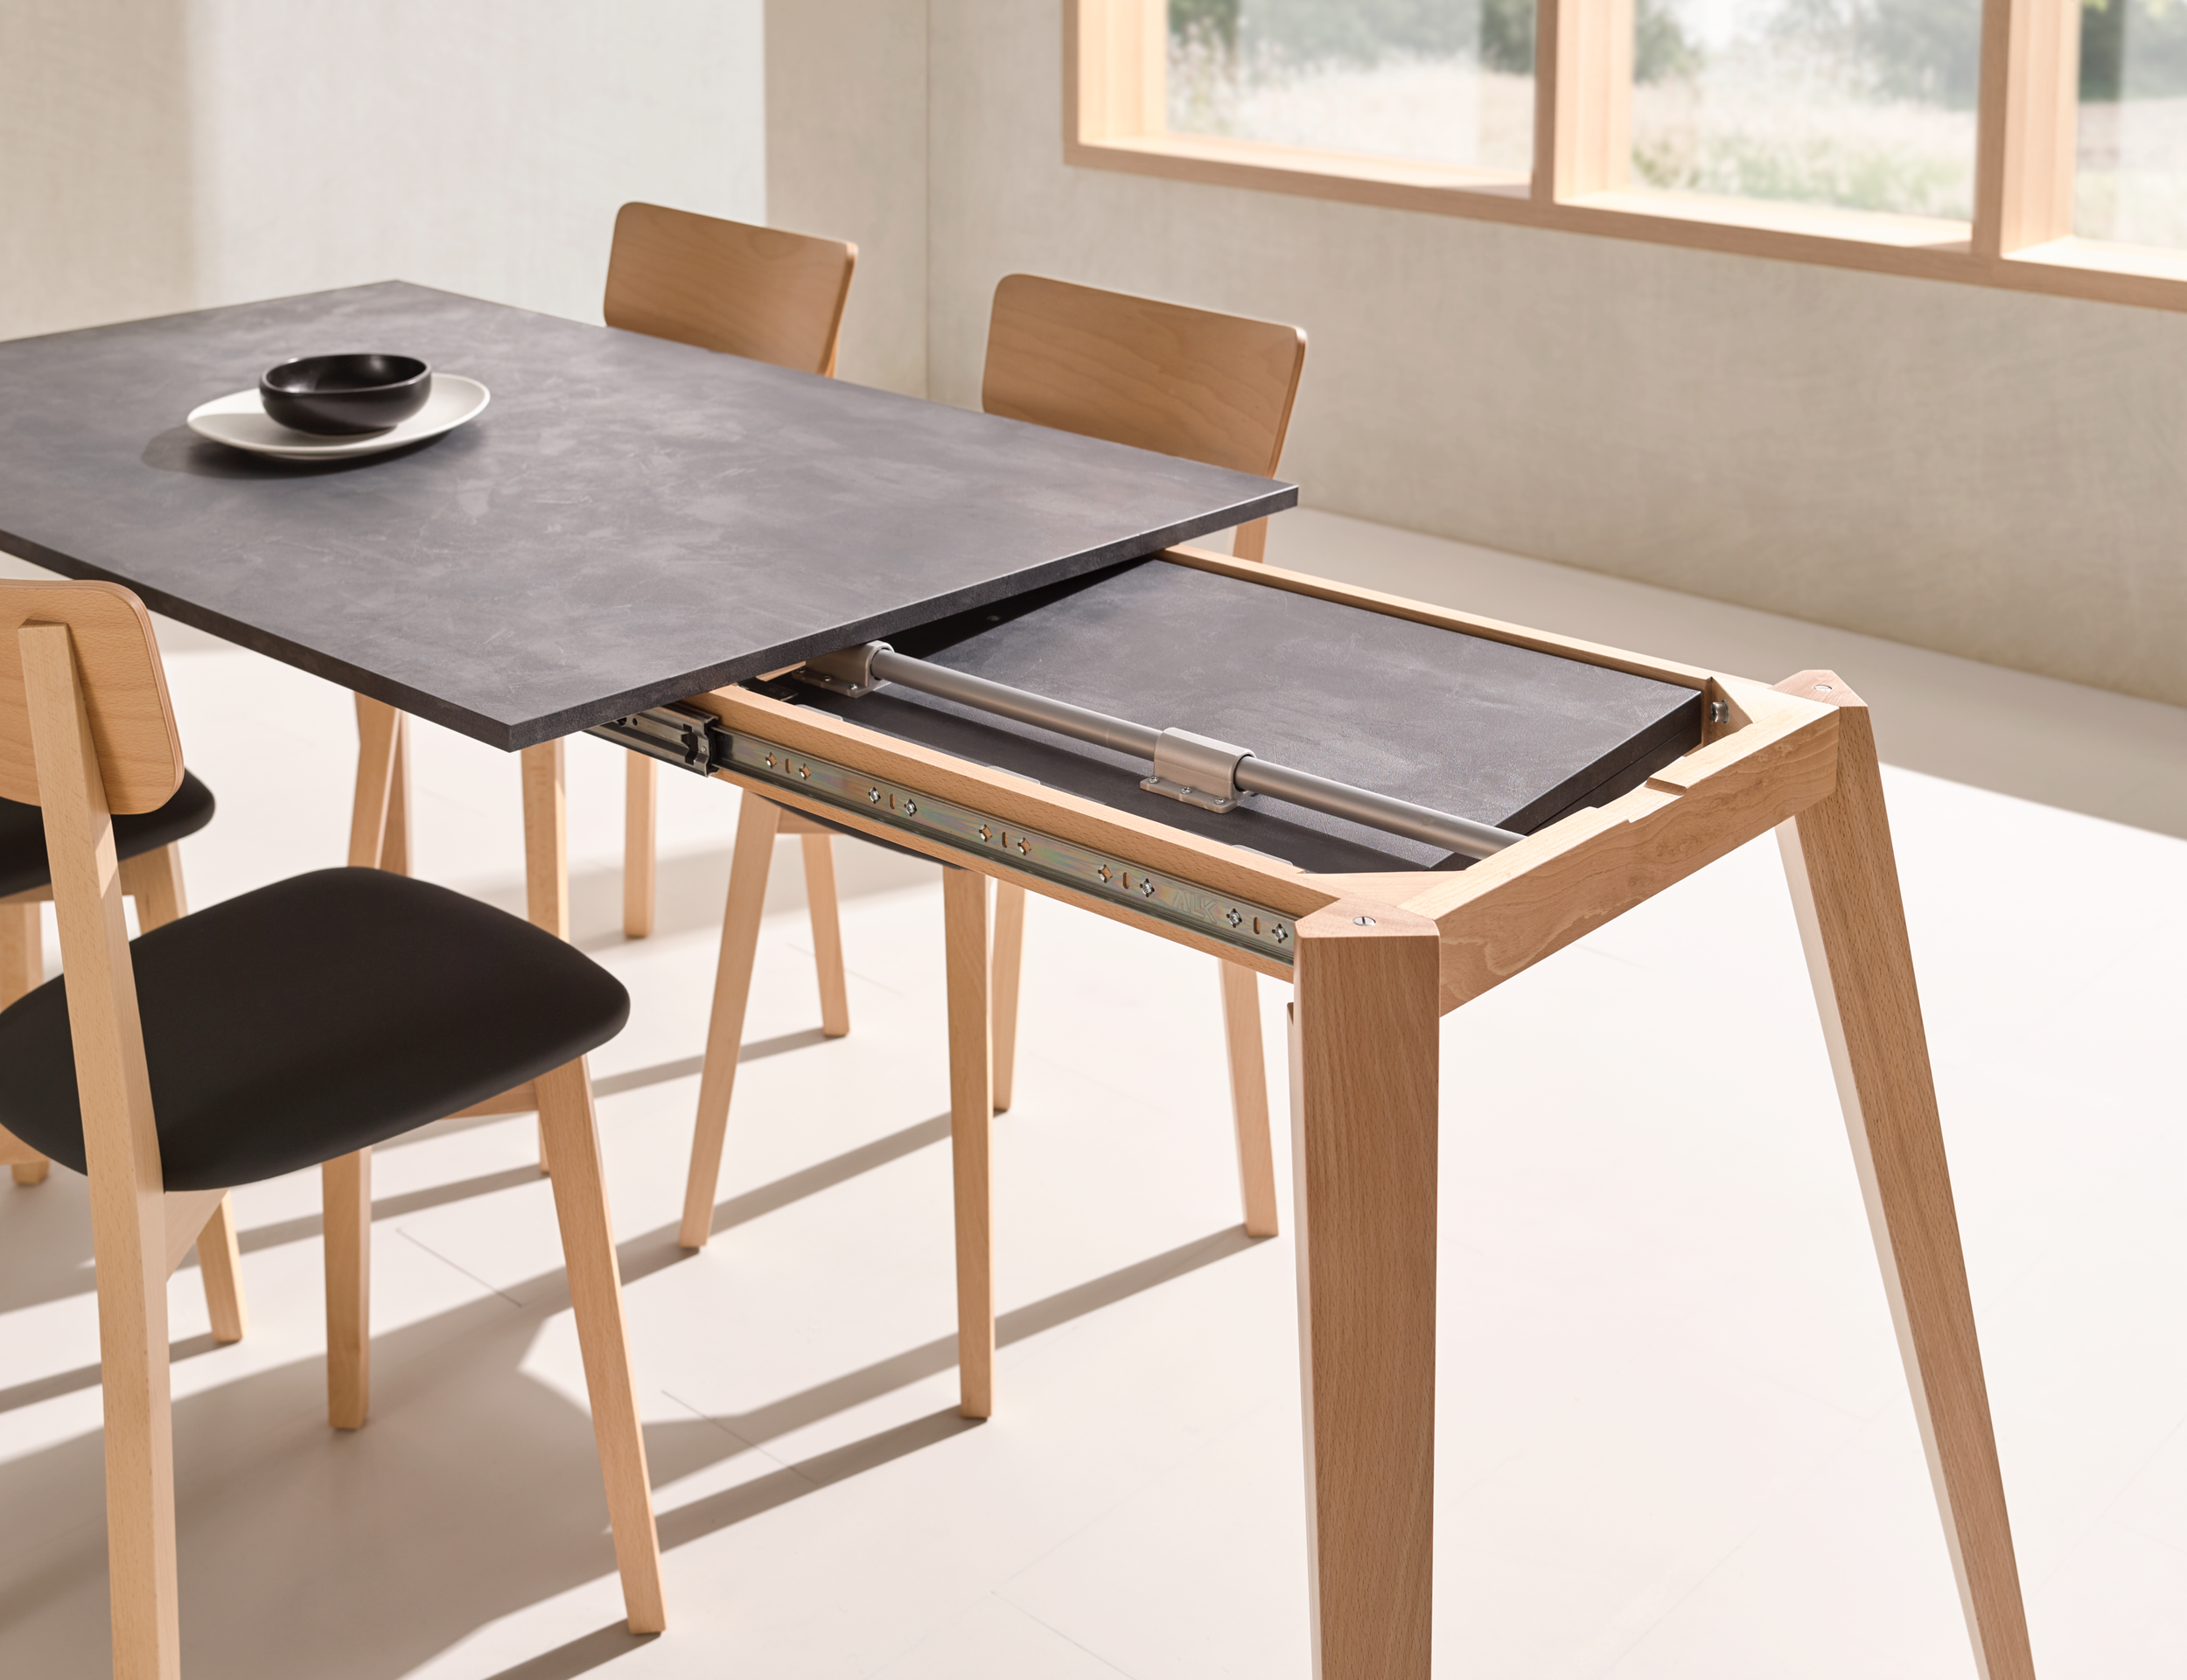 Modelos de mesas para cocinas estrechas — BLUMVER.